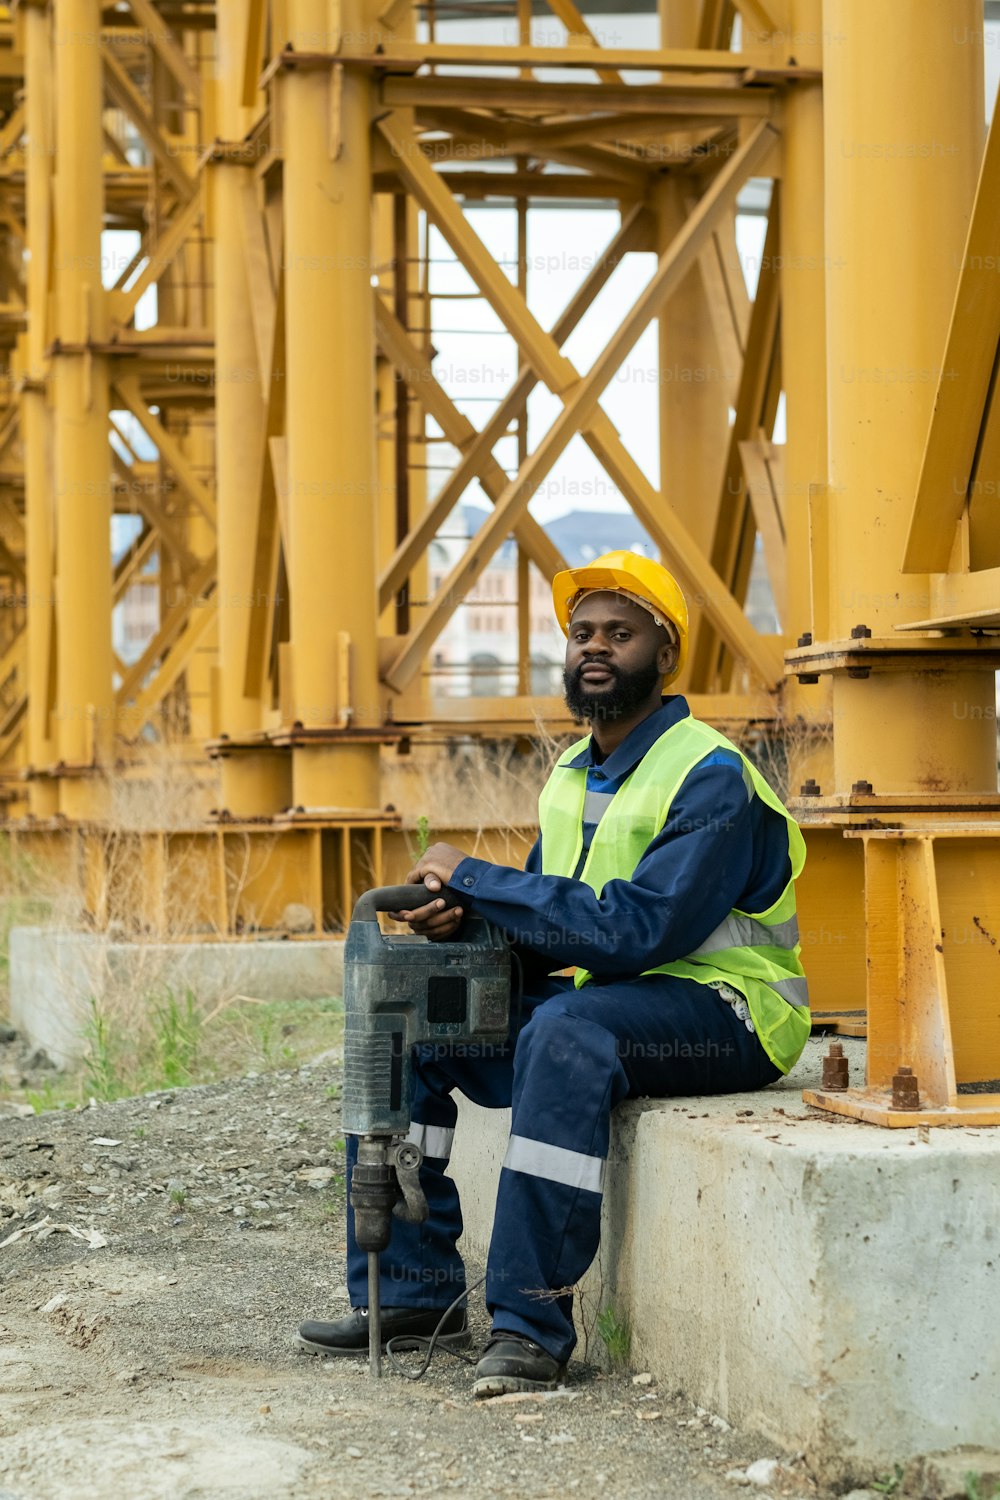 Retrato de un trabajador de la construcción africano en ropa de trabajo mirando a la cámara mientras está sentado al aire libre con una herramienta de trabajo